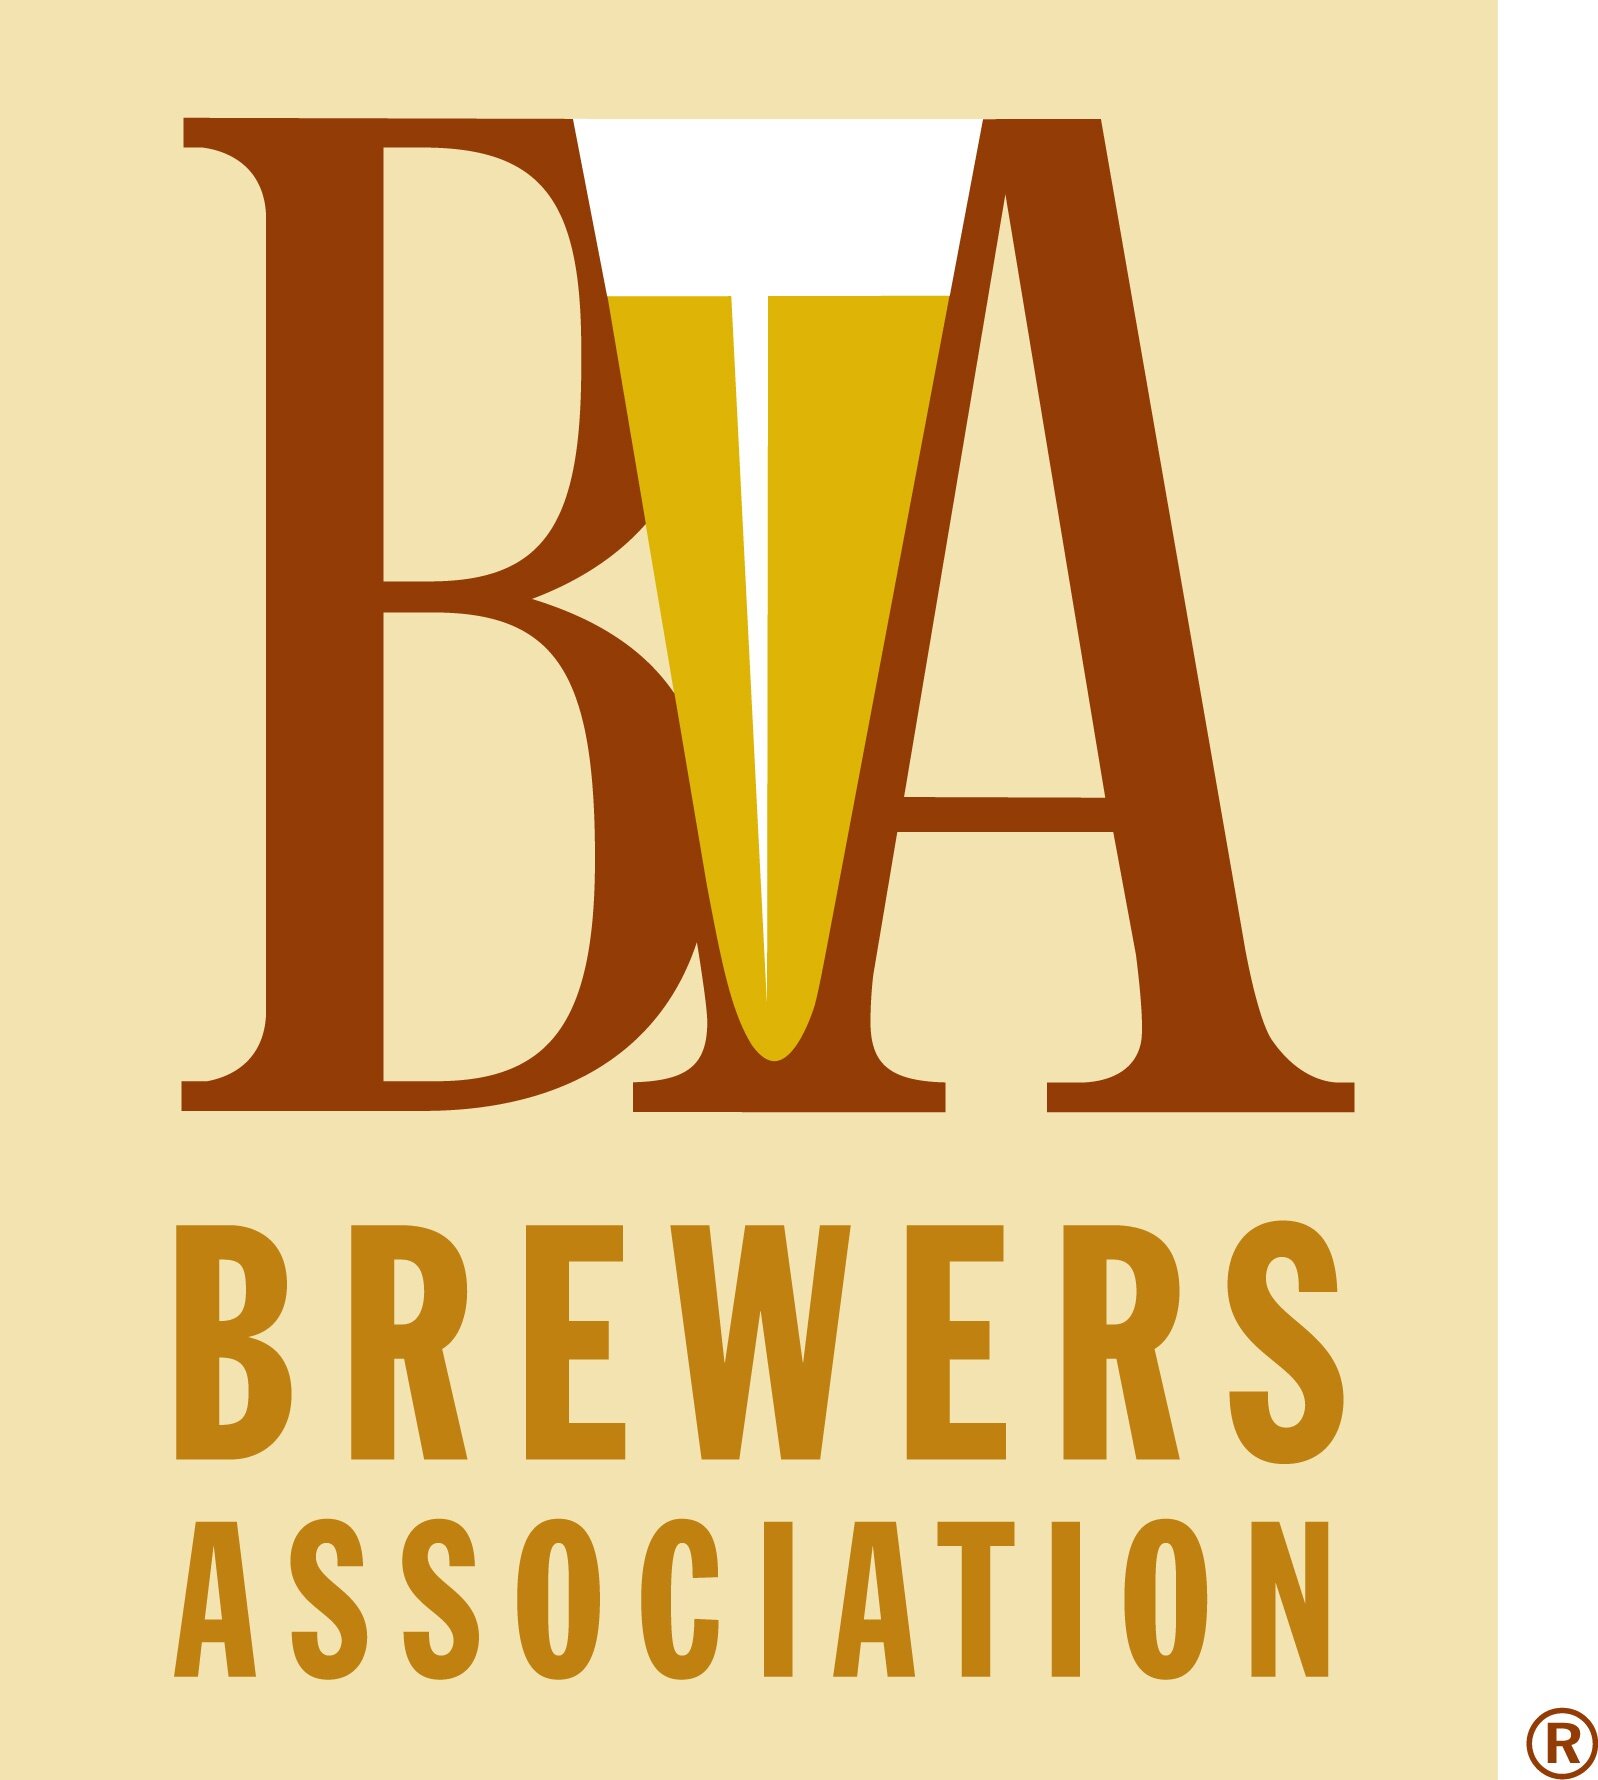 Brewers-Association logo.jpg